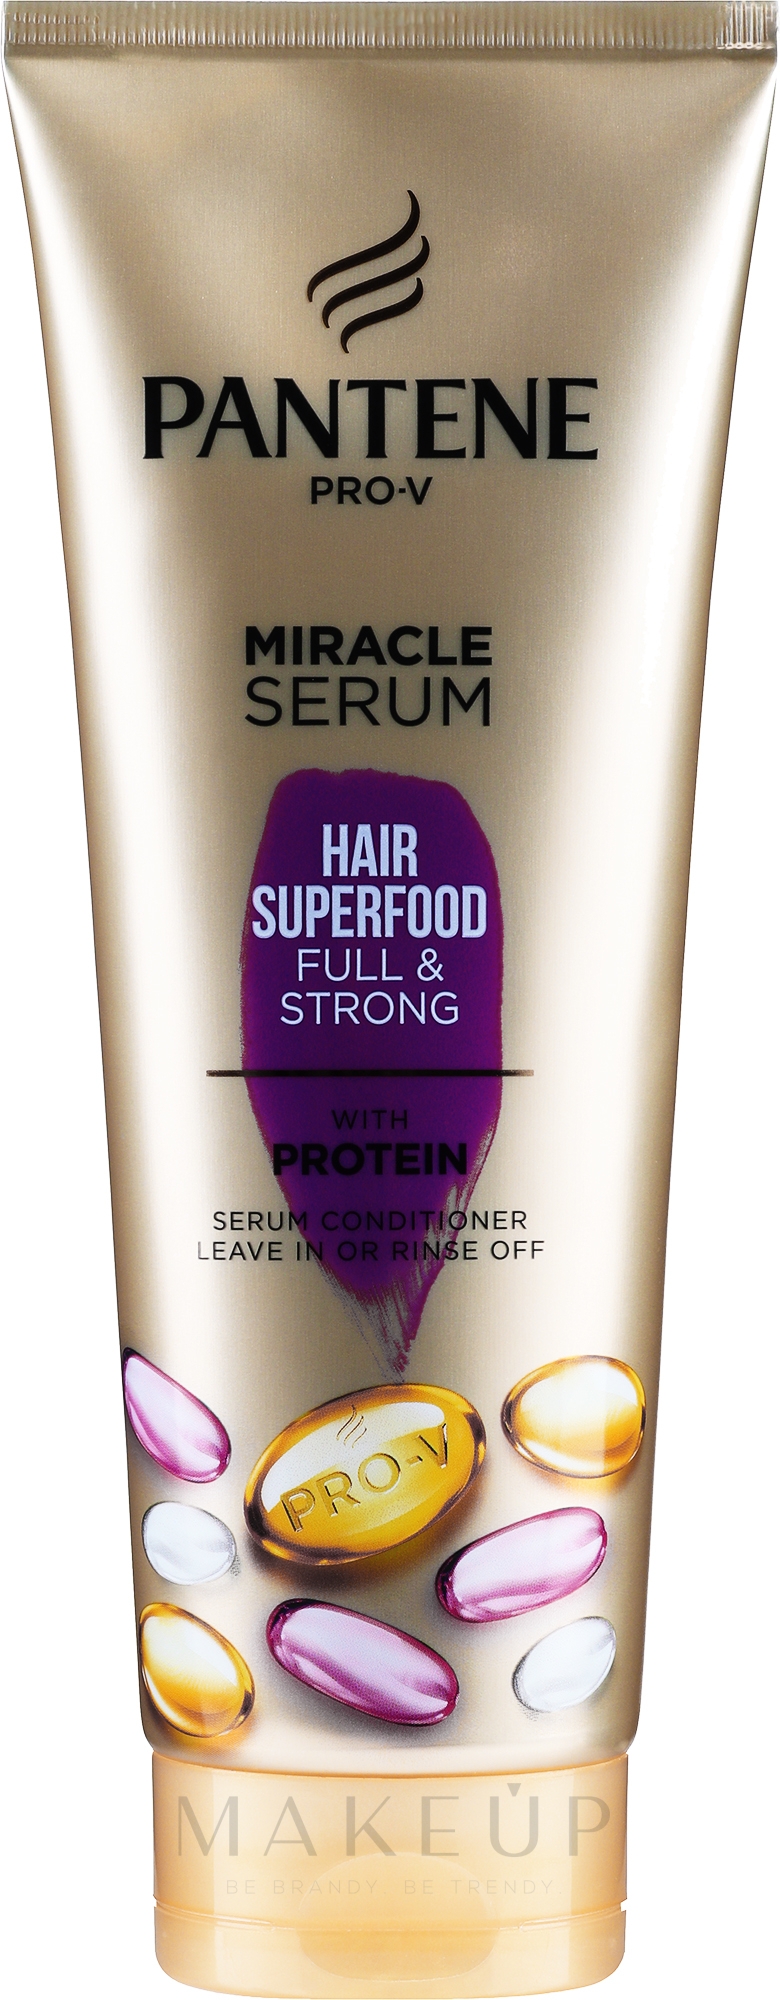 Nährende Haarspülung für strapaziertes Haar - Pantene Pro-V Miracle Serum Hair Superfood Full & Strong With Protein Serum Conditioner — Bild 200 ml